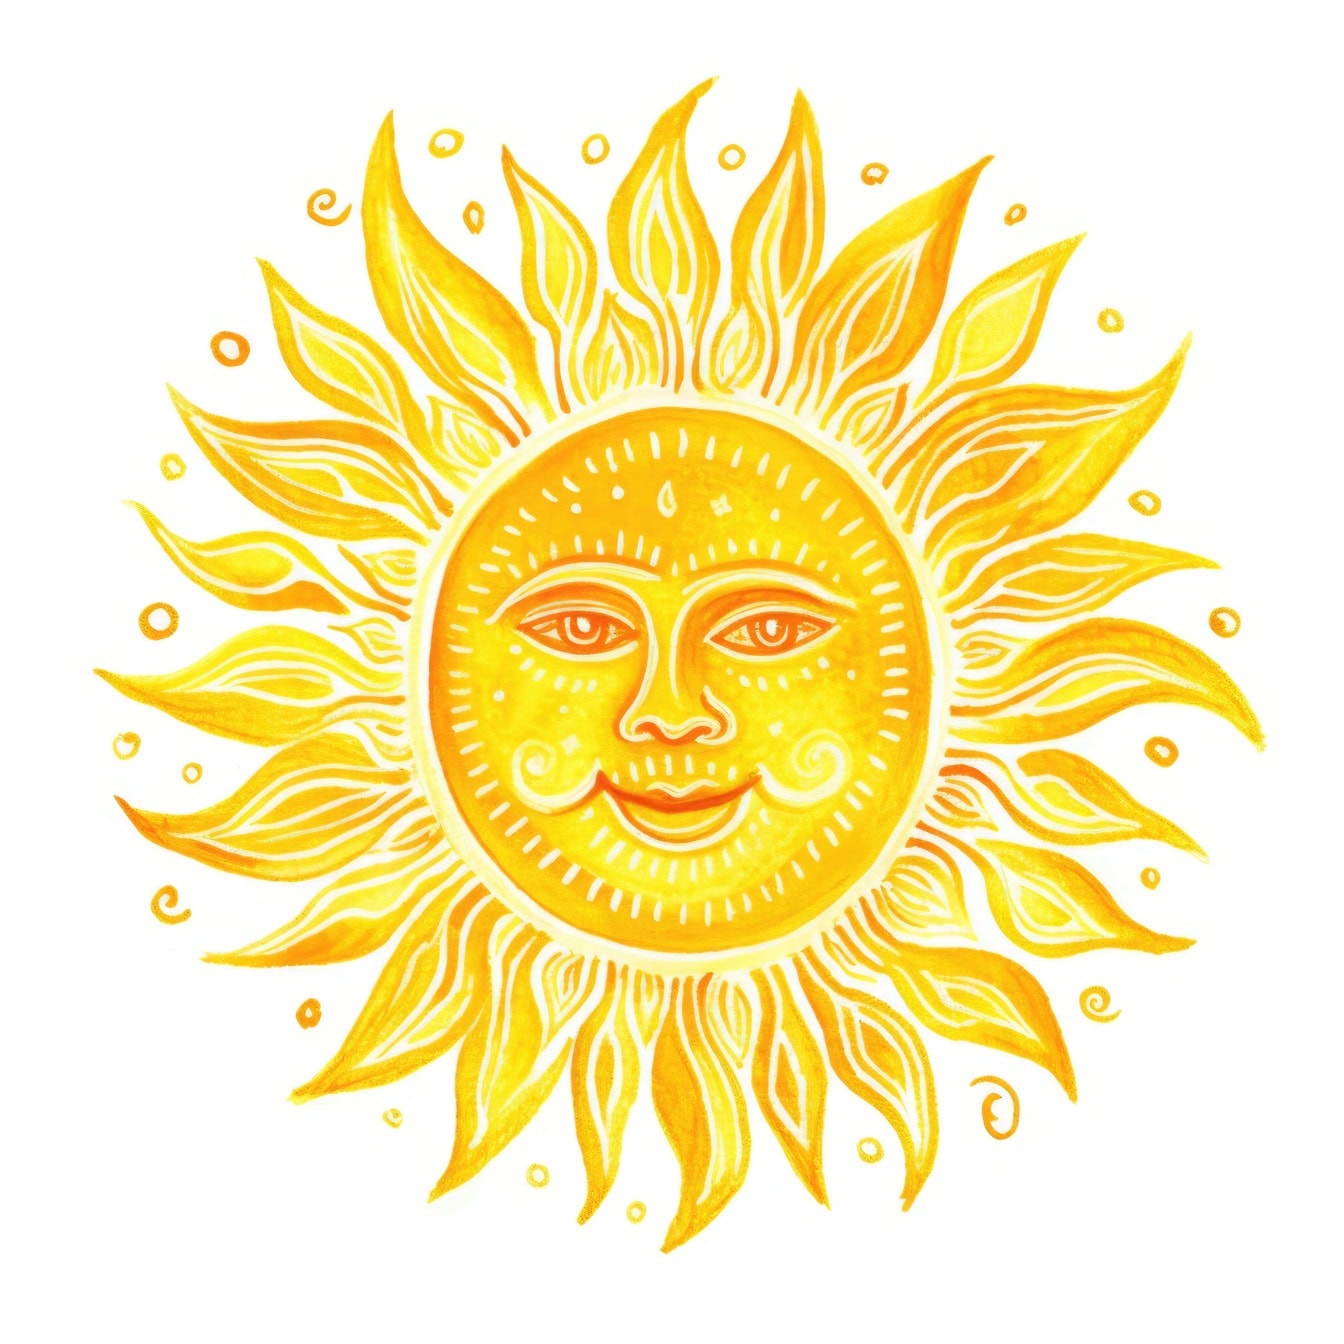 Grafik Matahari kuning dengan wajah tersenyum digambar di atasnya dengan latar belakang putih